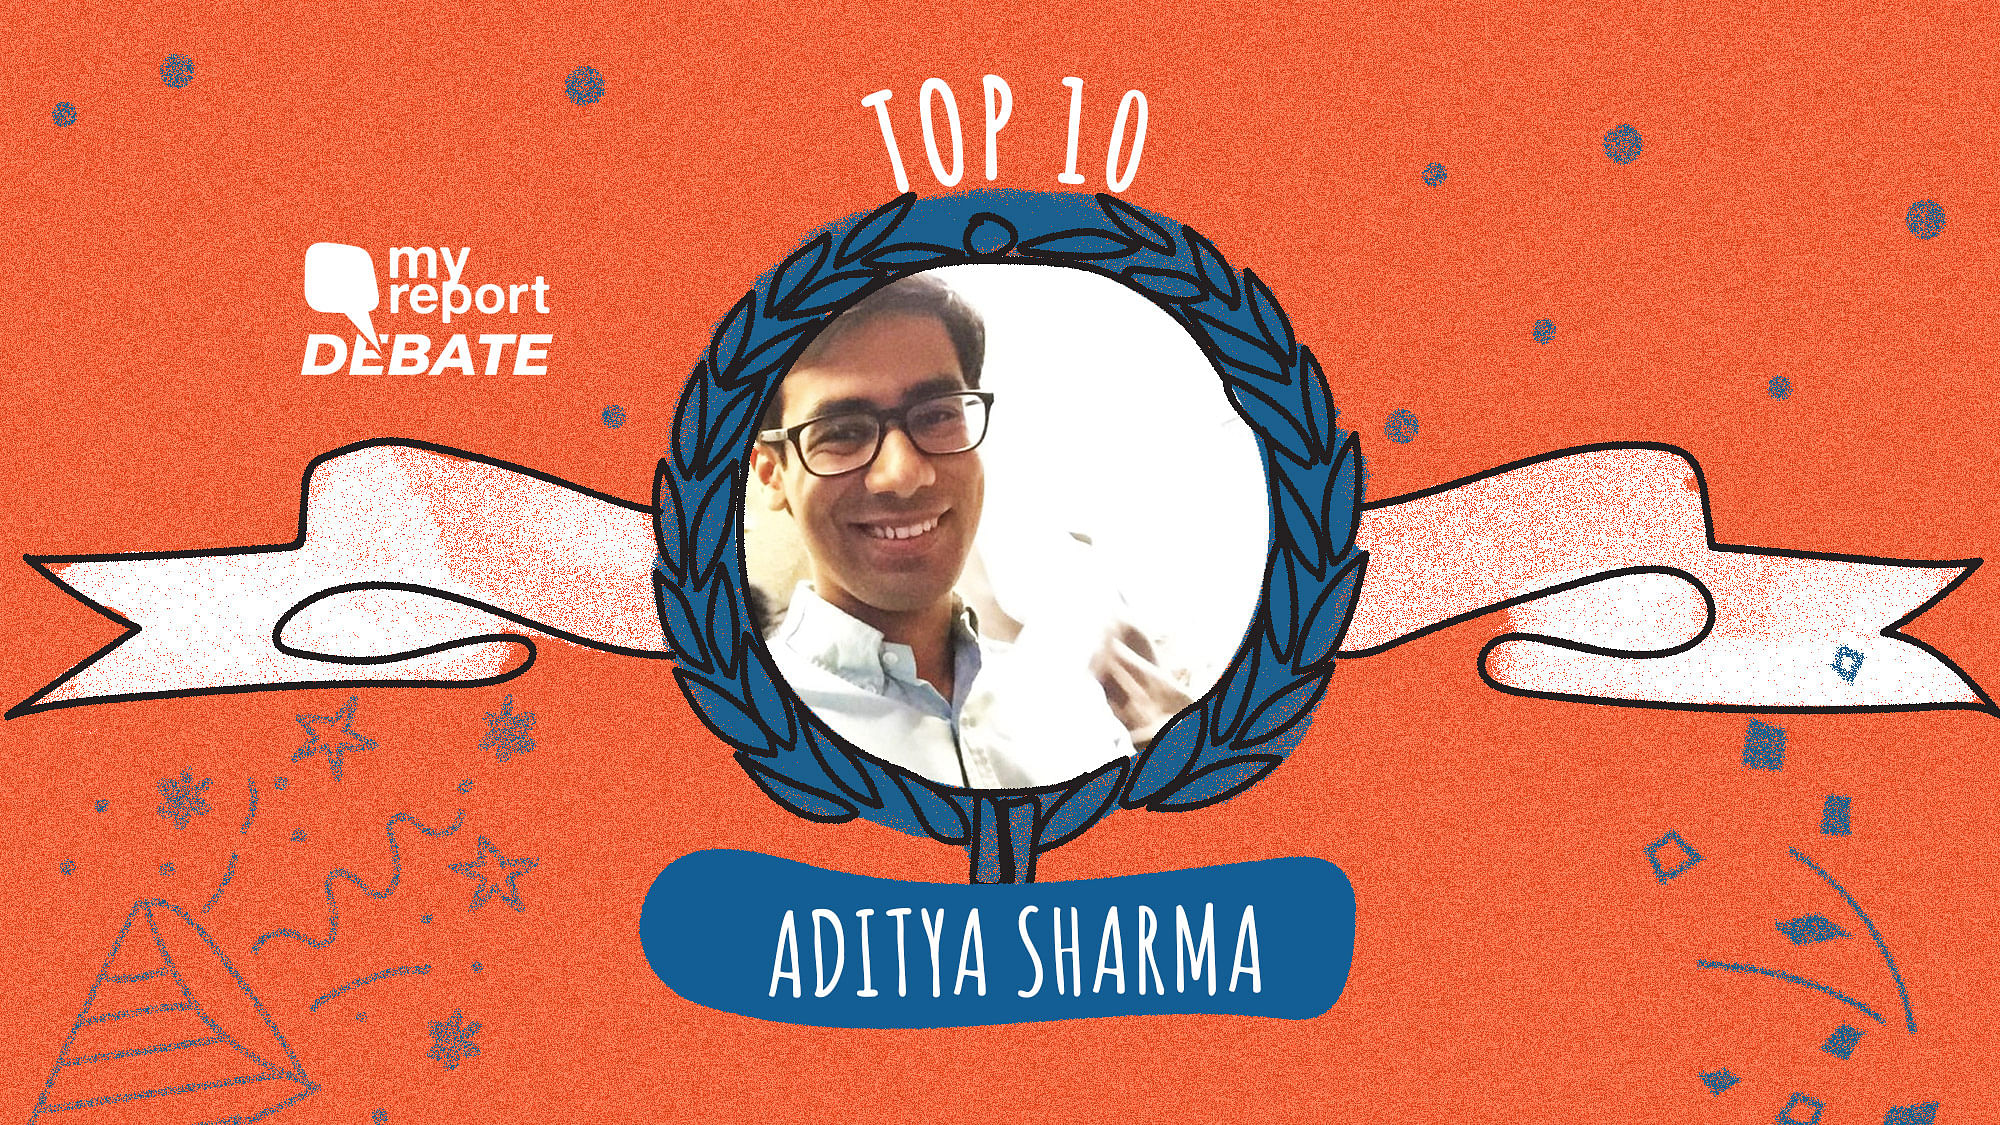 Aditya Sharma’s essay is among the Top 10 of the My Report Debate II.